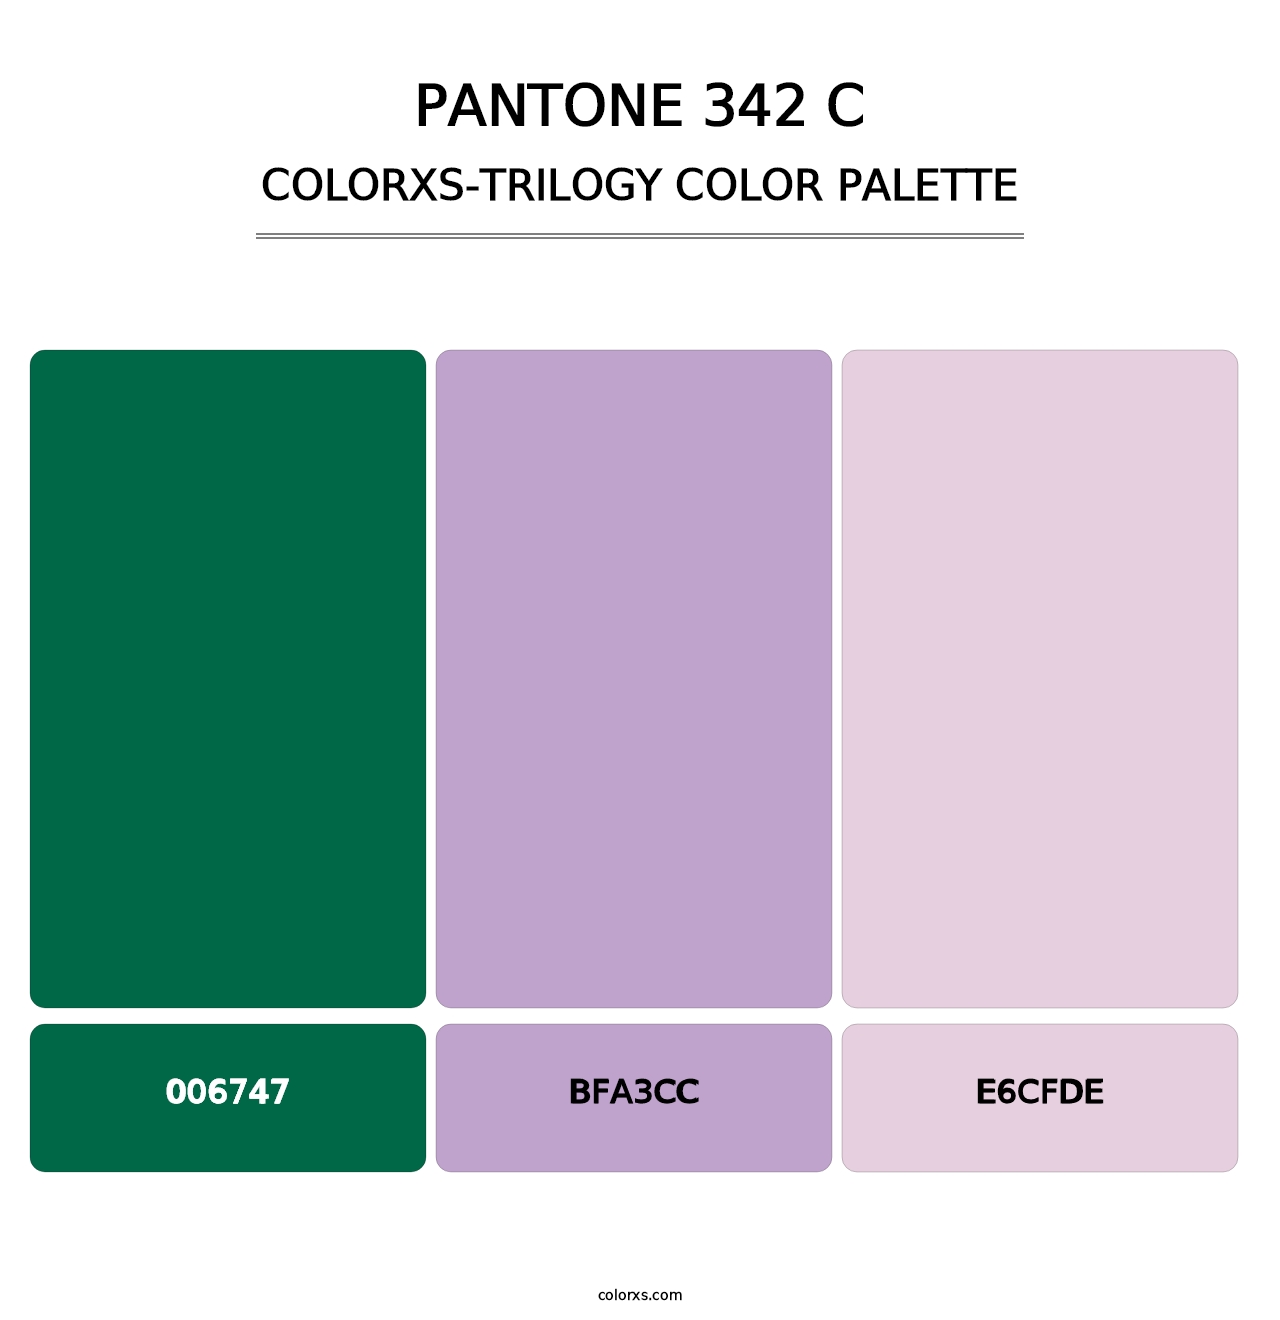 PANTONE 342 C - Colorxs Trilogy Palette